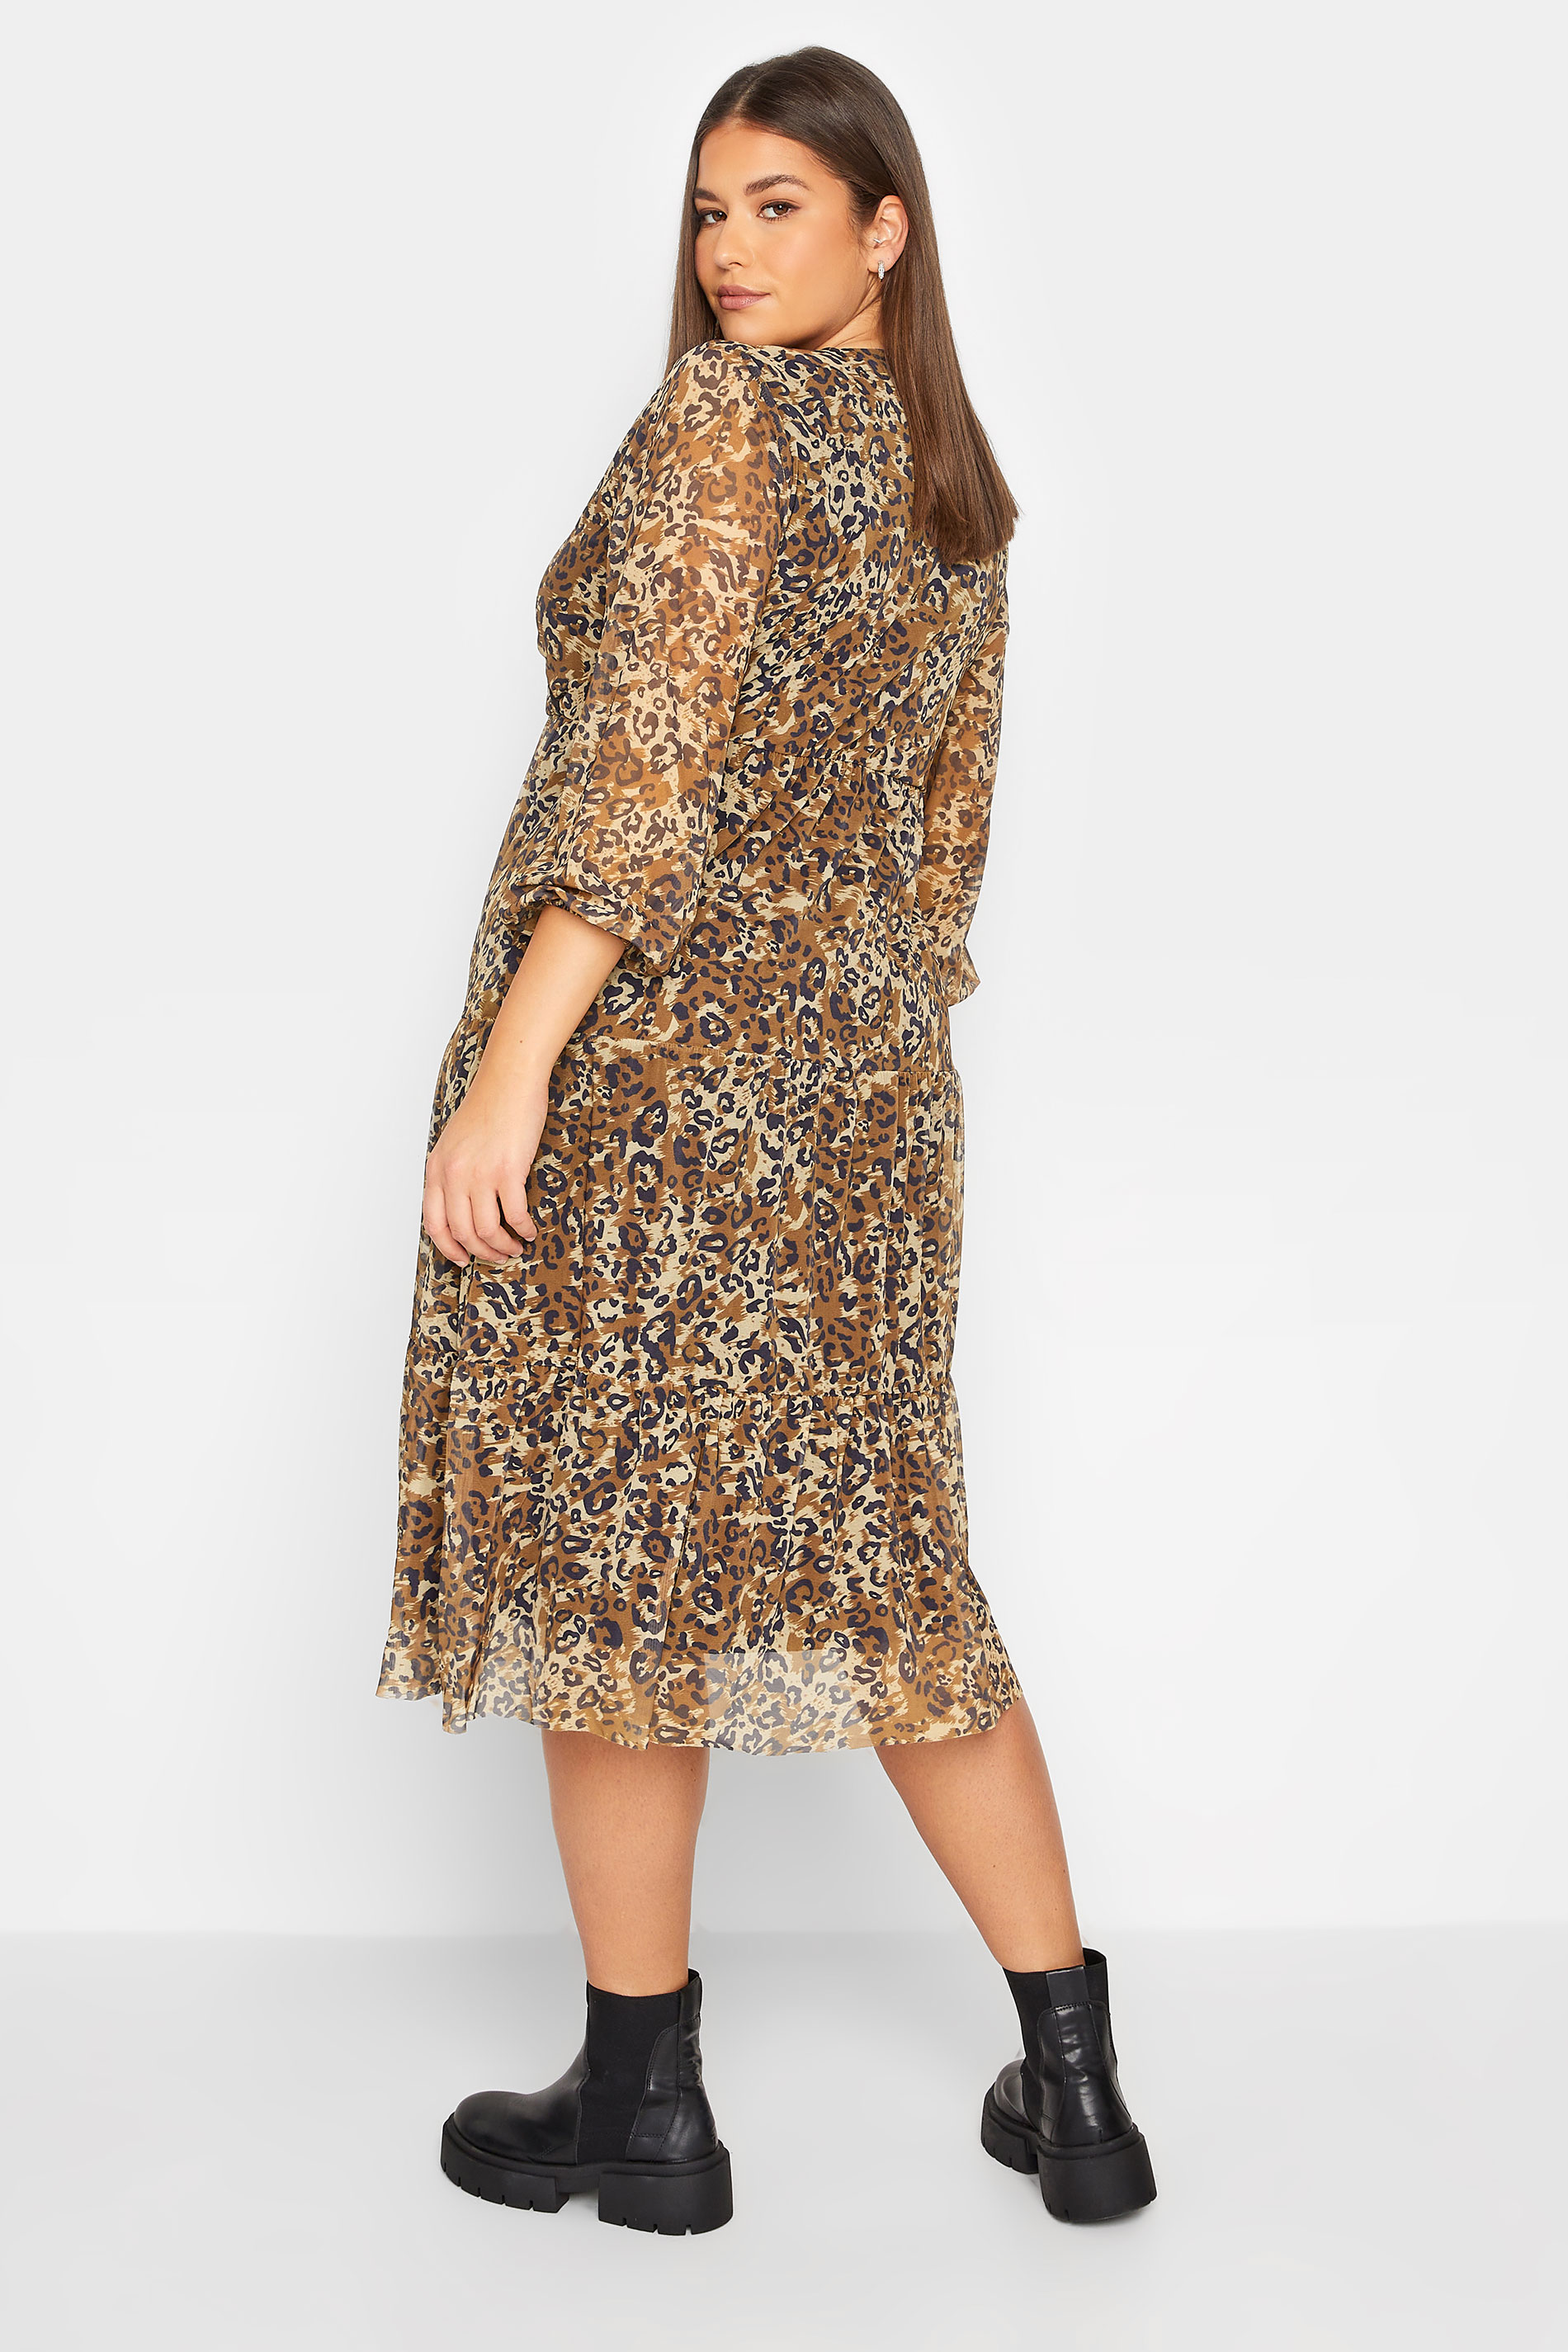 LTS Tall Women's Brown Leopard Print Mesh Dress | Long Tall Sally 3